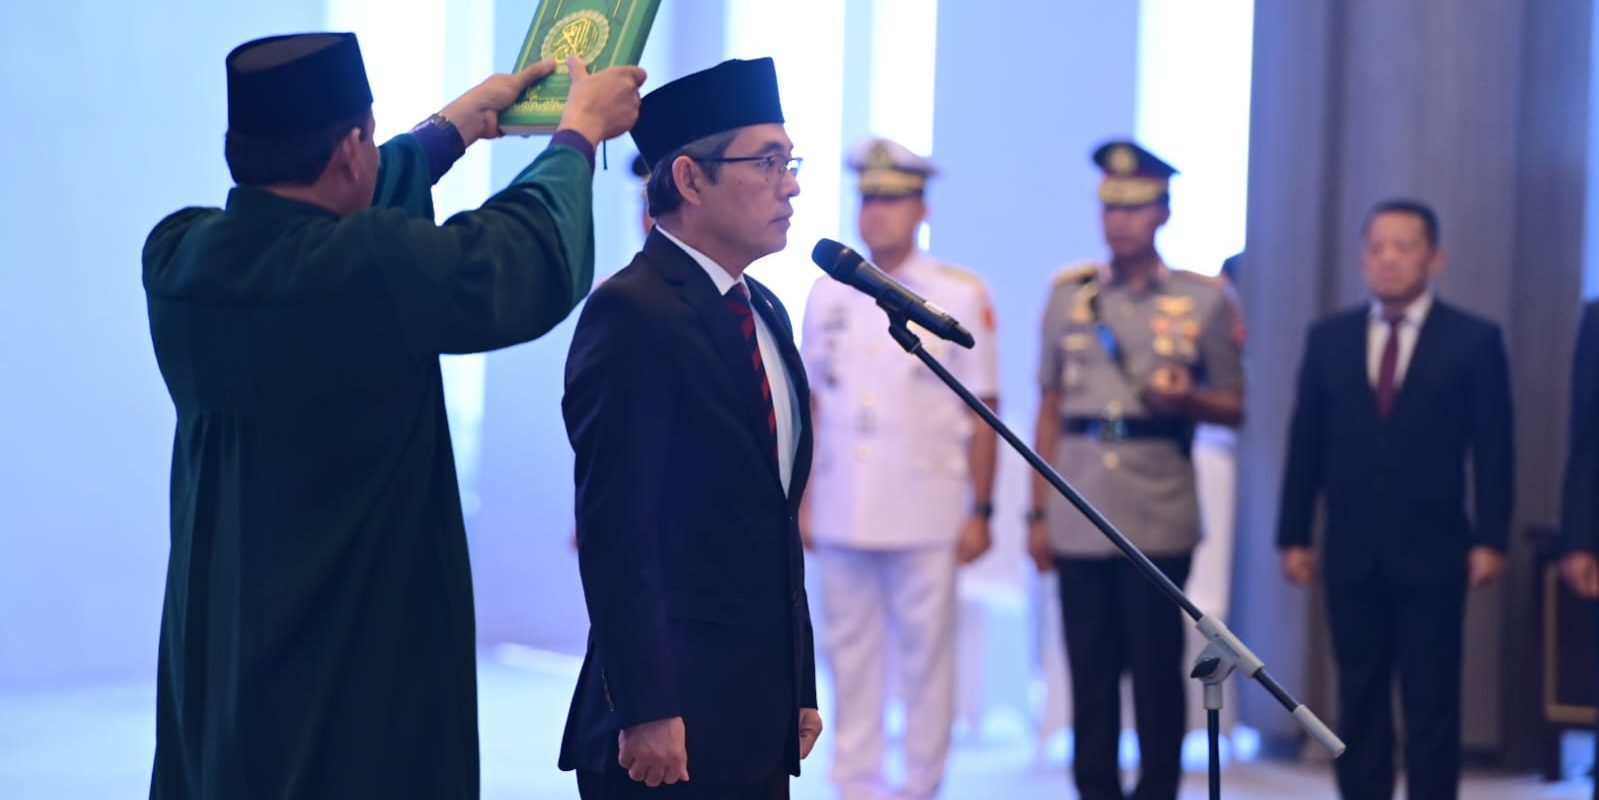 Anggota Badan Pemeriksa Keuangan (BPK) Hendra Susanto mengucapkan sumpah jabatan sebagai wakil ketua BPK di Gedung Mahkamah Agung, Jakarta pada Jumat (4/8/2023). Pengucapan sumpah jabatan tersebut dipandu oleh Ketua Mahkamah Agung, M Syarifuddin.